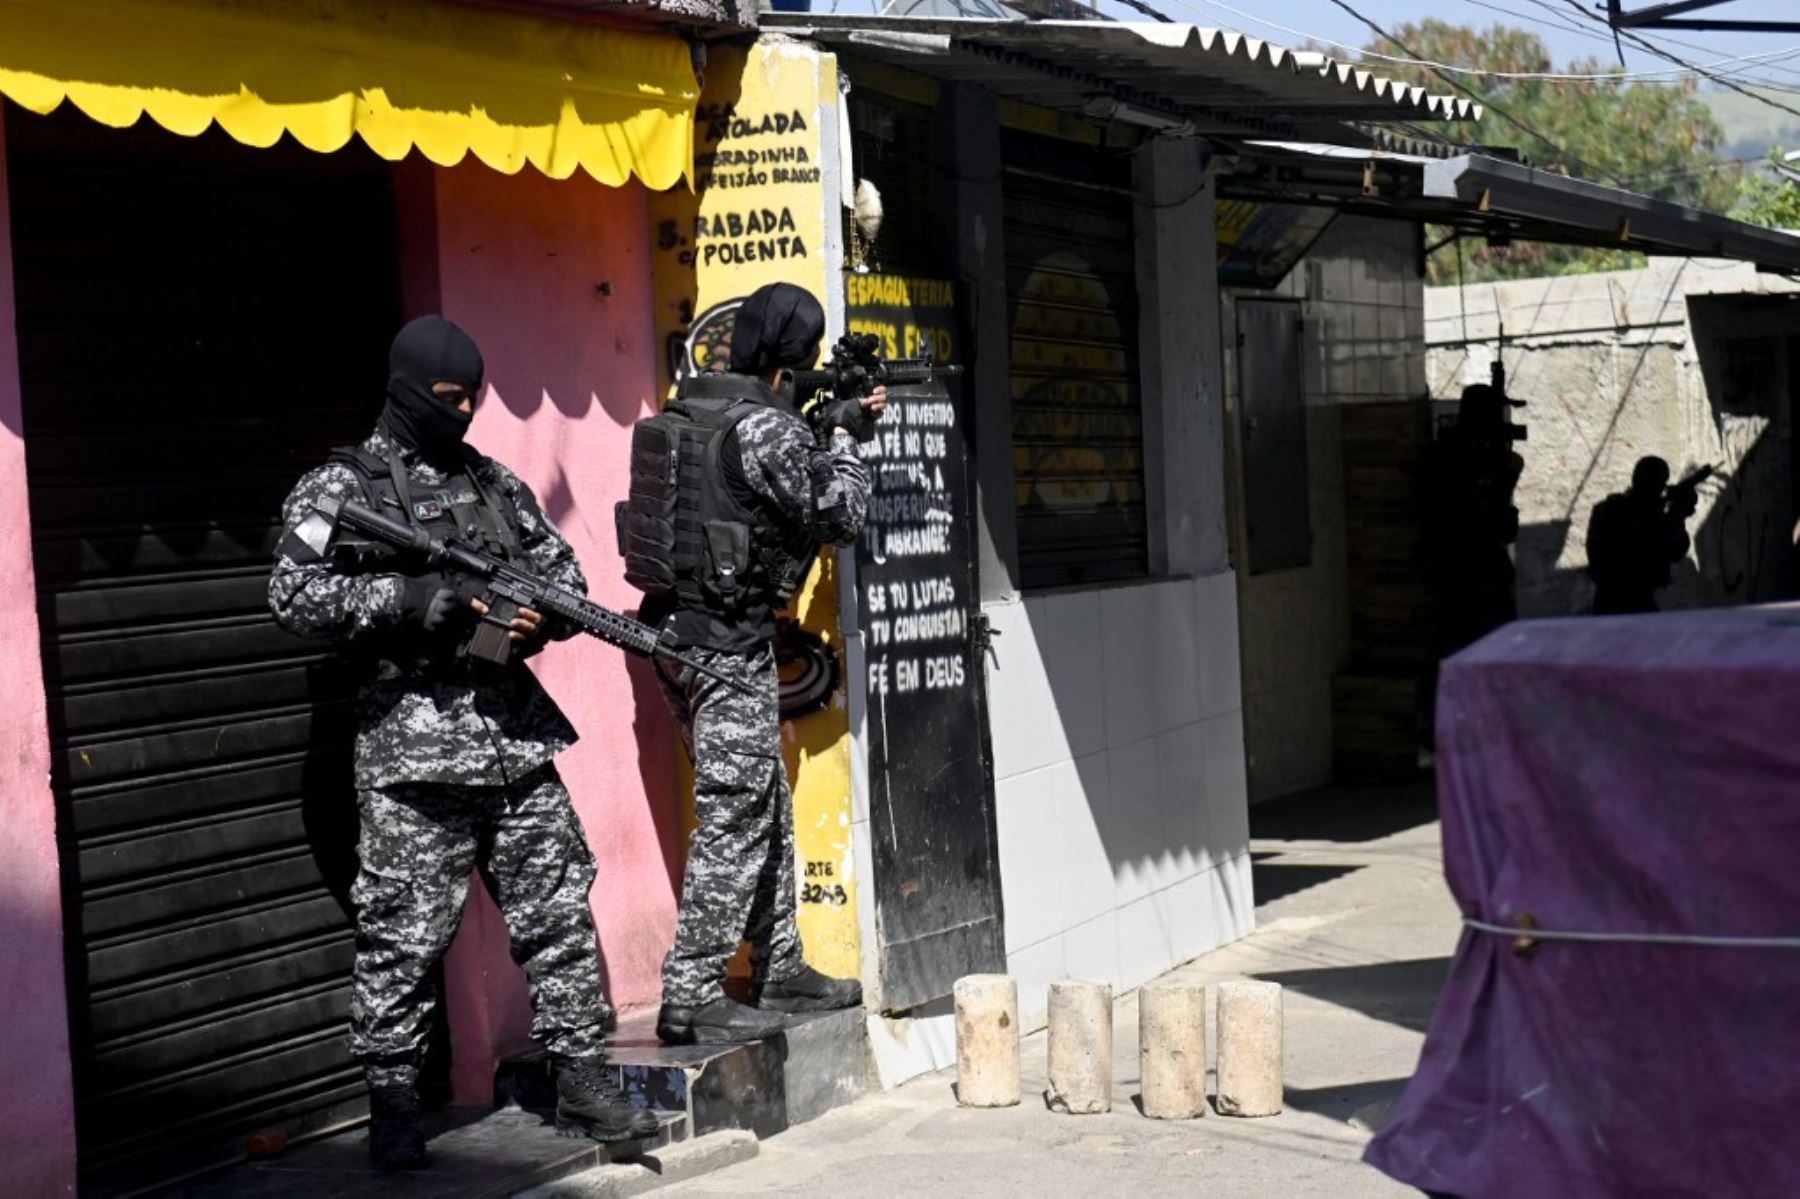 Agentes de la Policía Civil de Río son vistos durante un operativo policial contra narcotraficantes en la favela Jacarezinho en el estado de Río de Janeiro, Brasil, el 6 de mayo de 2021. Foto: AFP